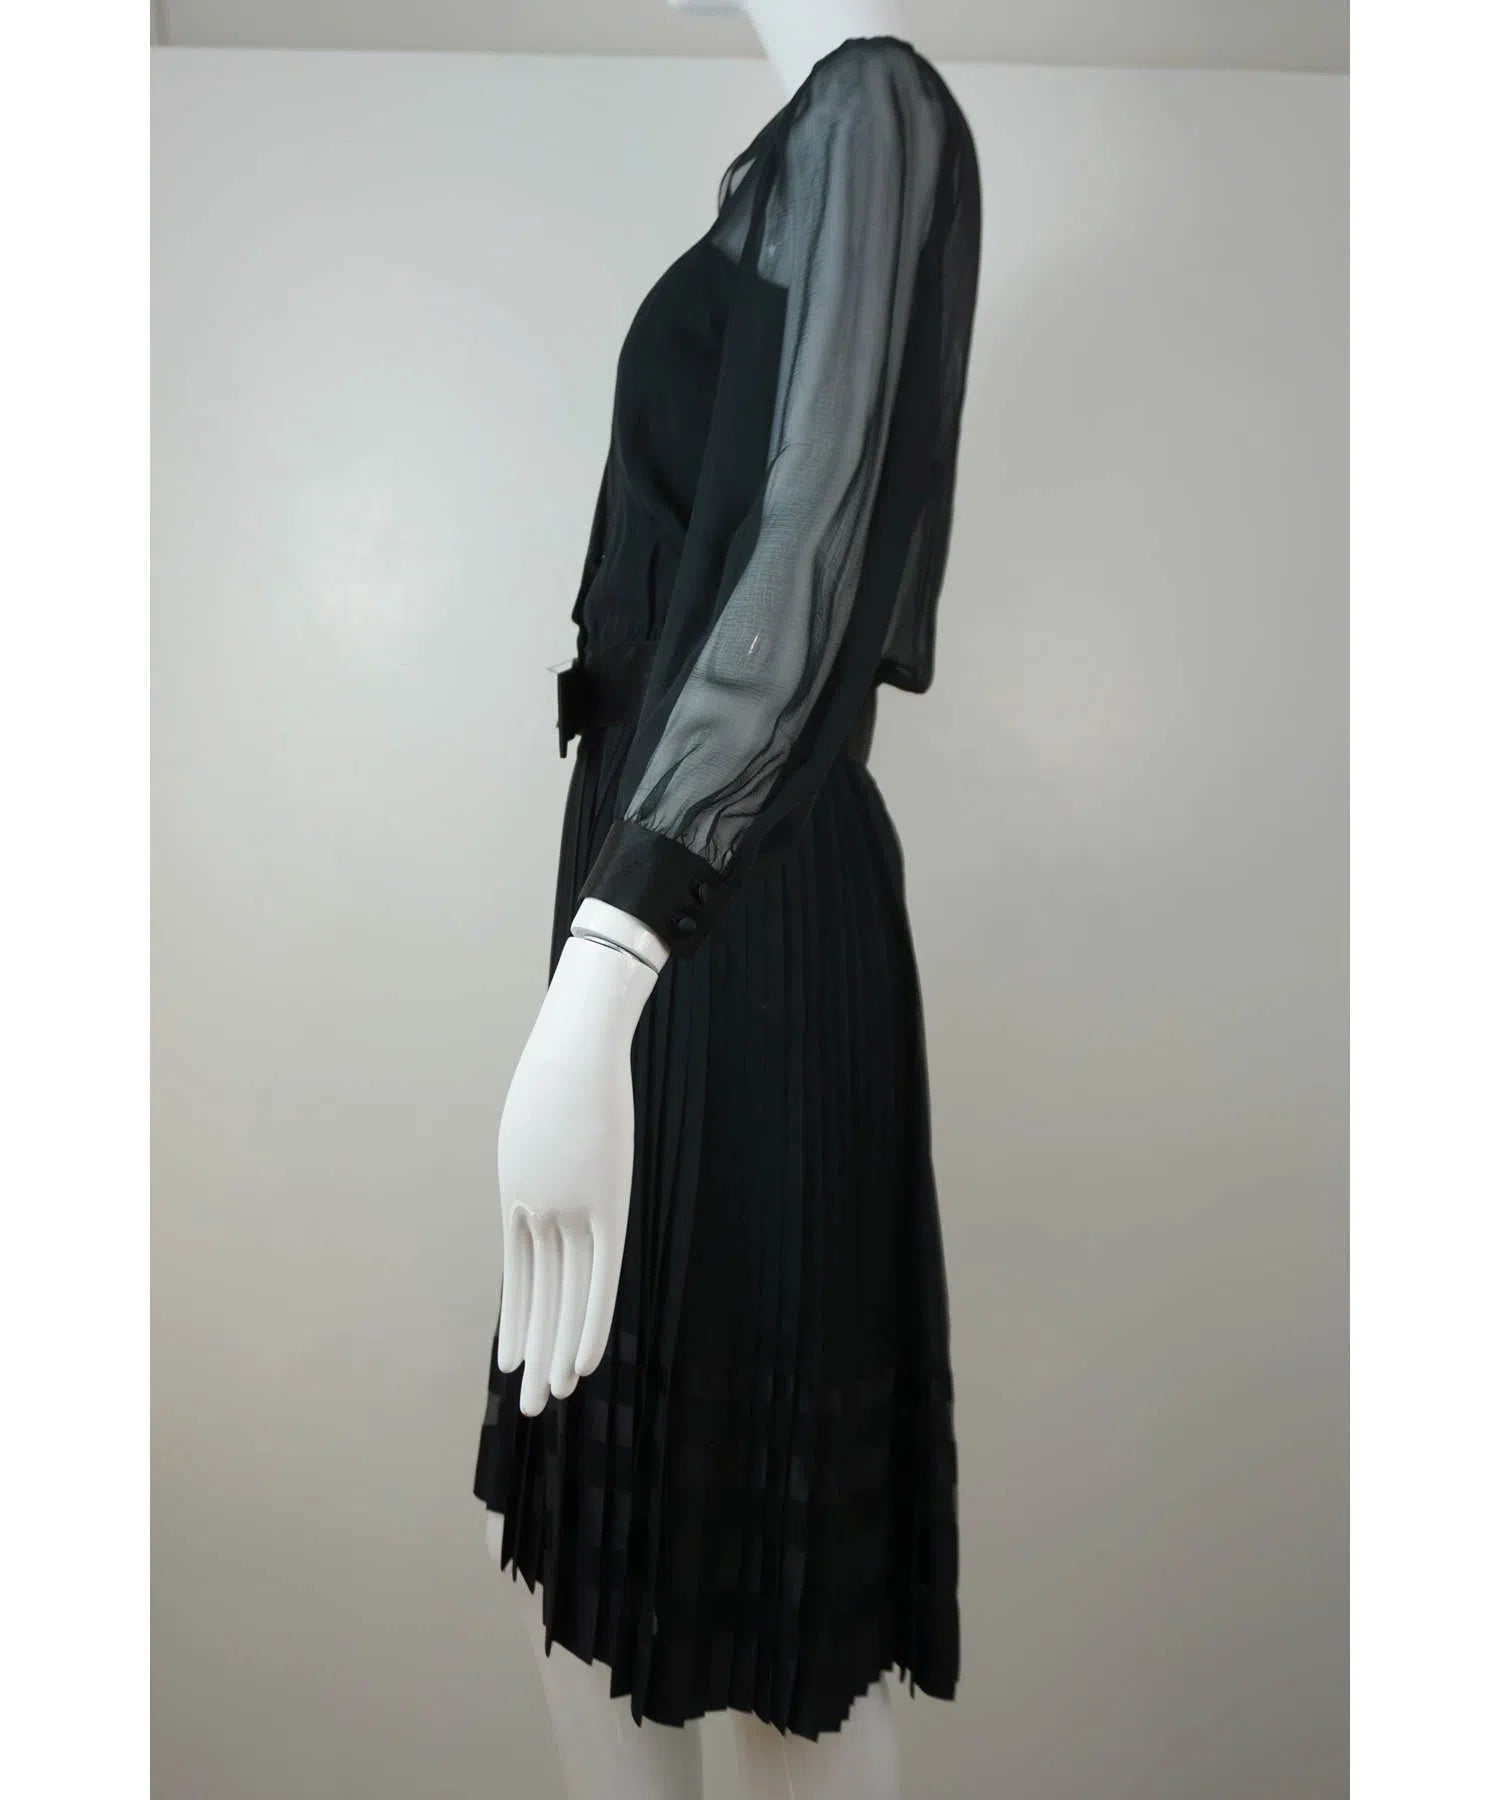 Chanel Haute Couture Black Silk Dress